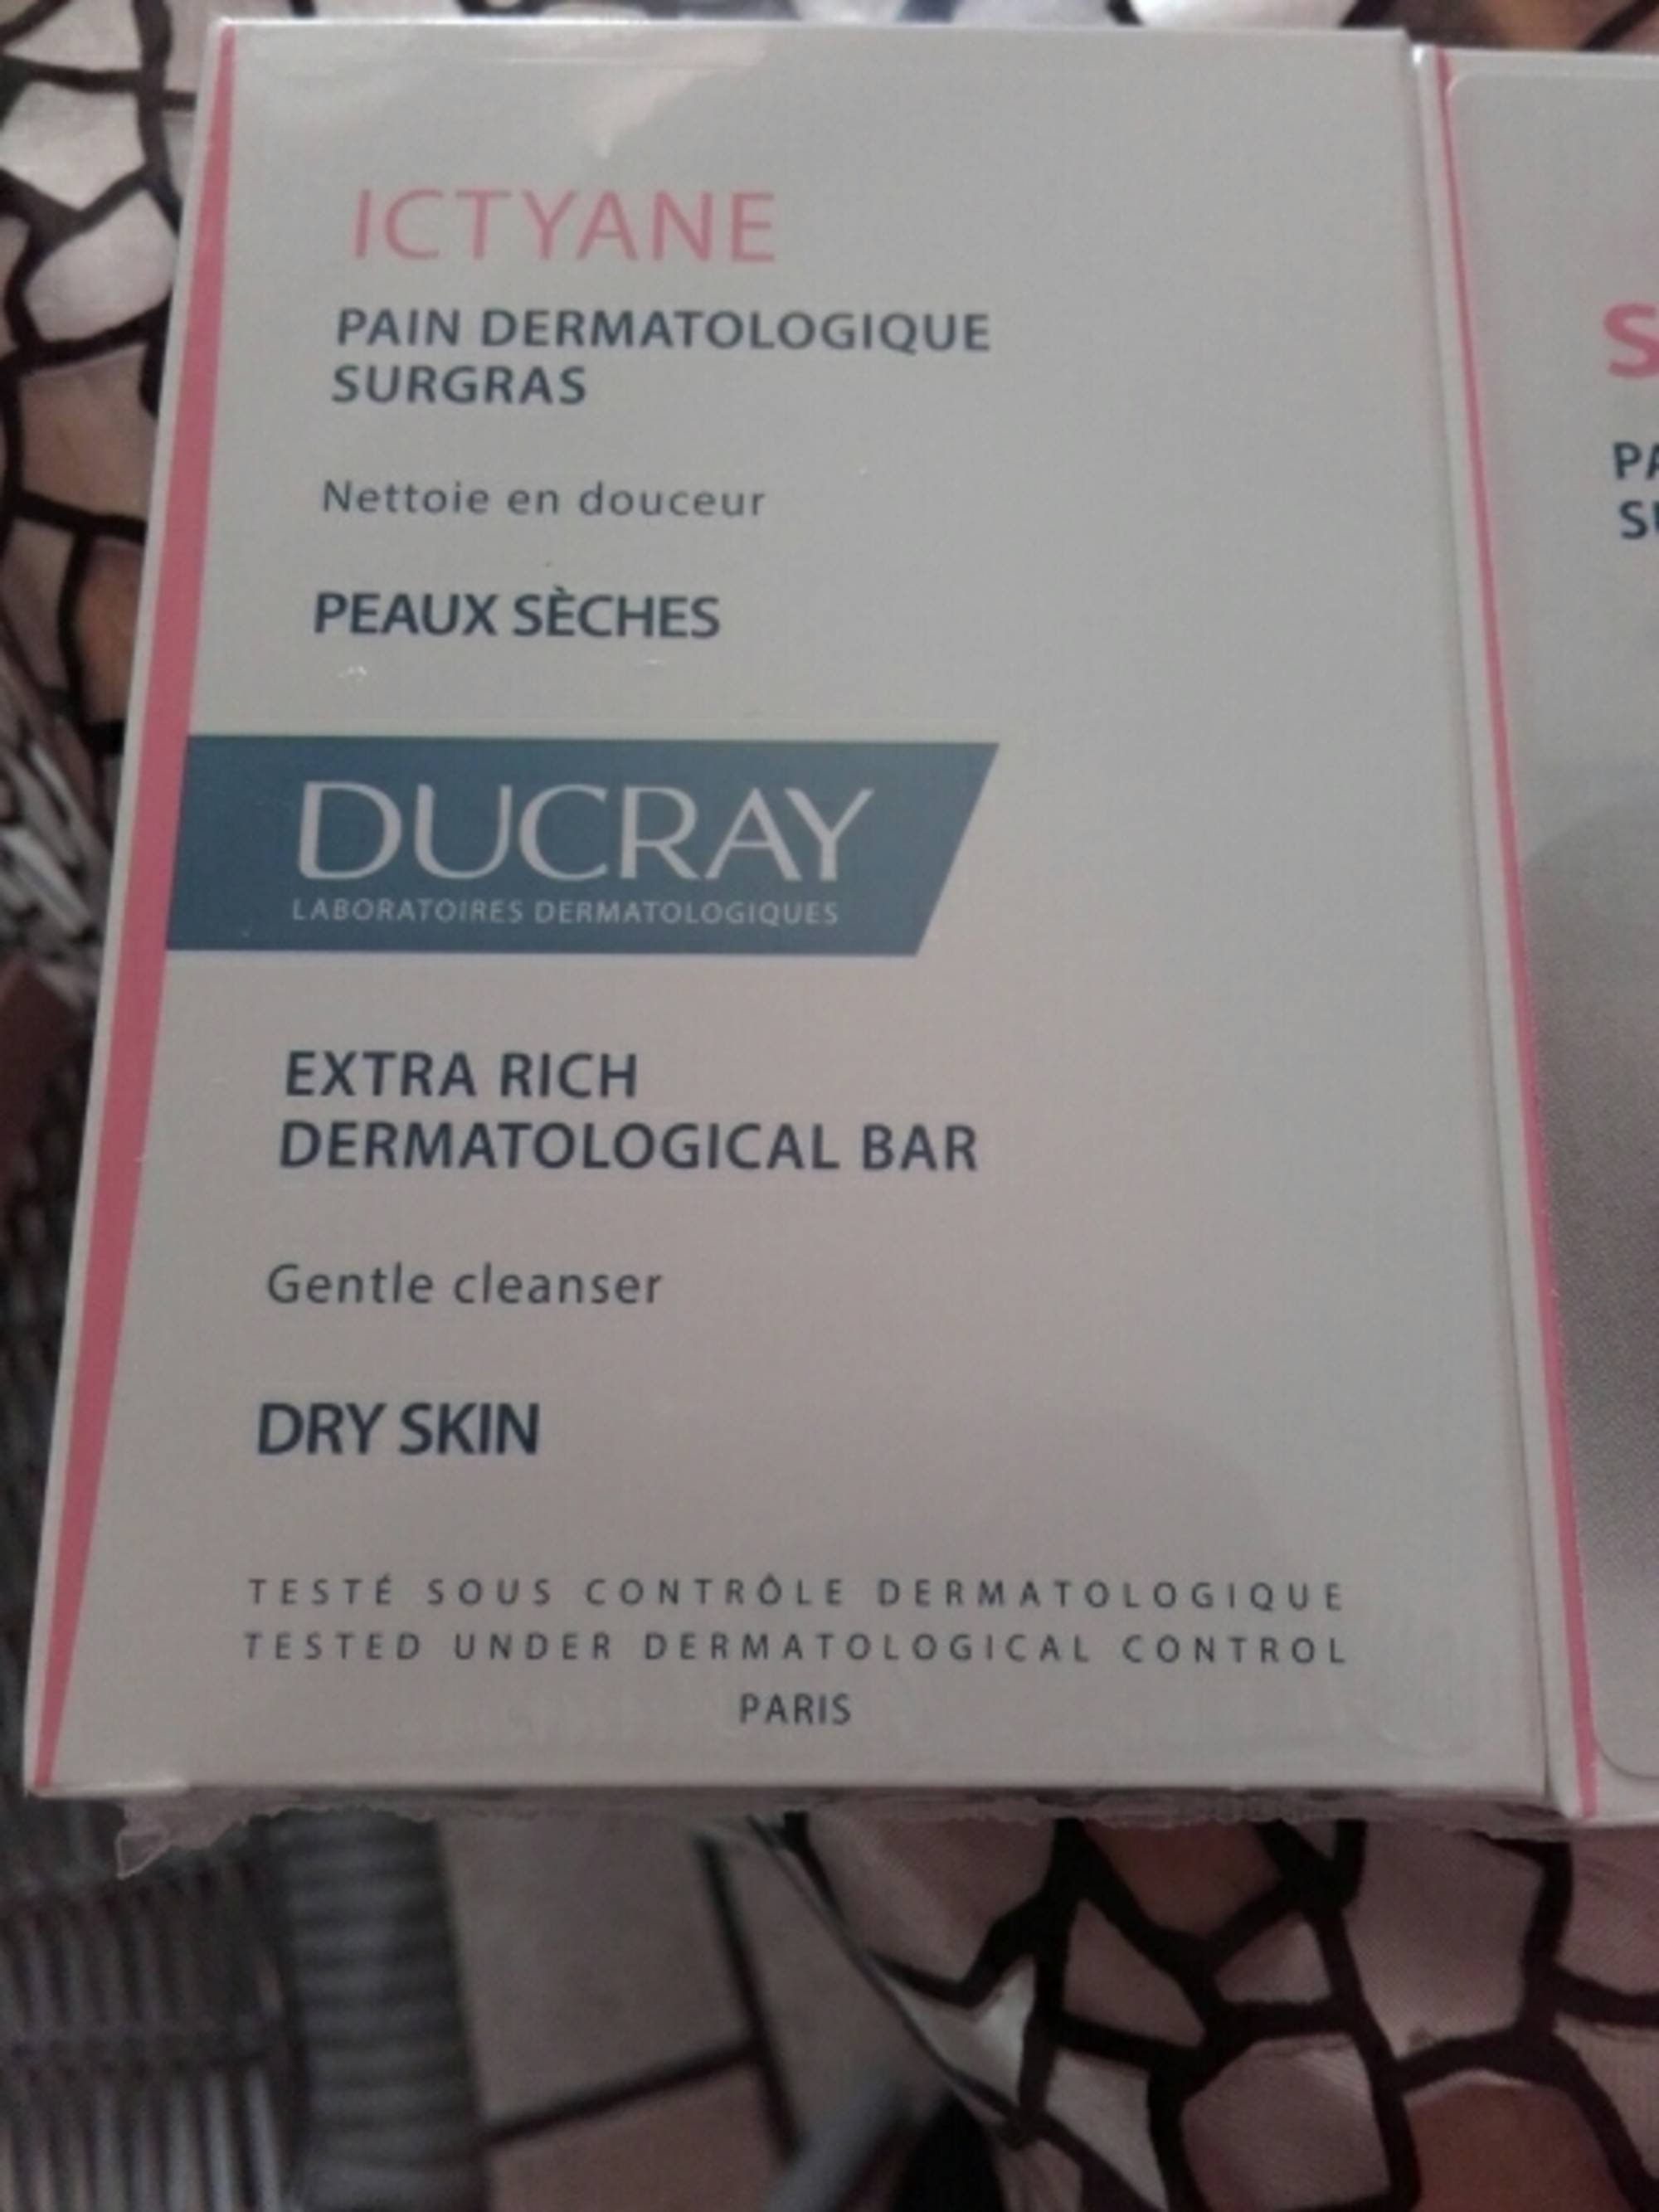 DUCRAY - Pain dermatologique surgras